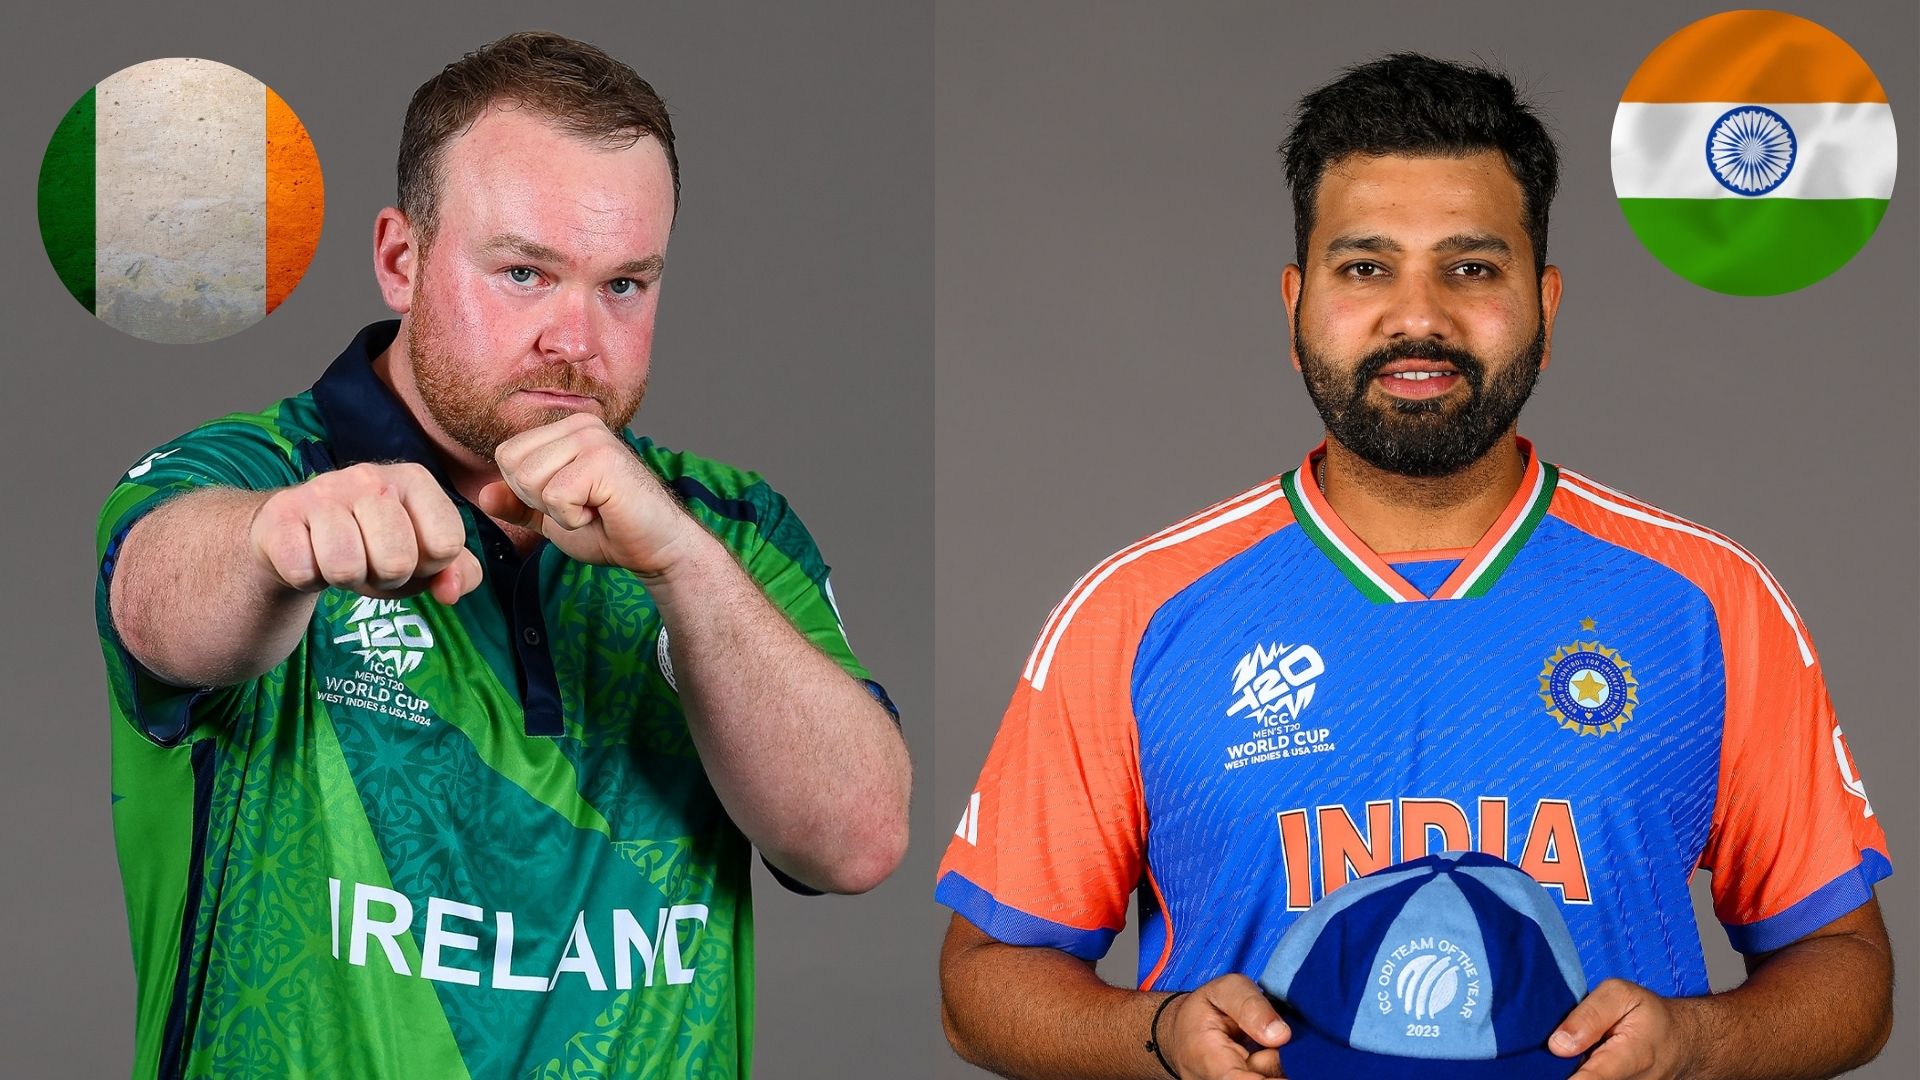 आइसीसी टी-२० विश्वकपमा आज भारत र आयरल्याण्ड भिड्दै